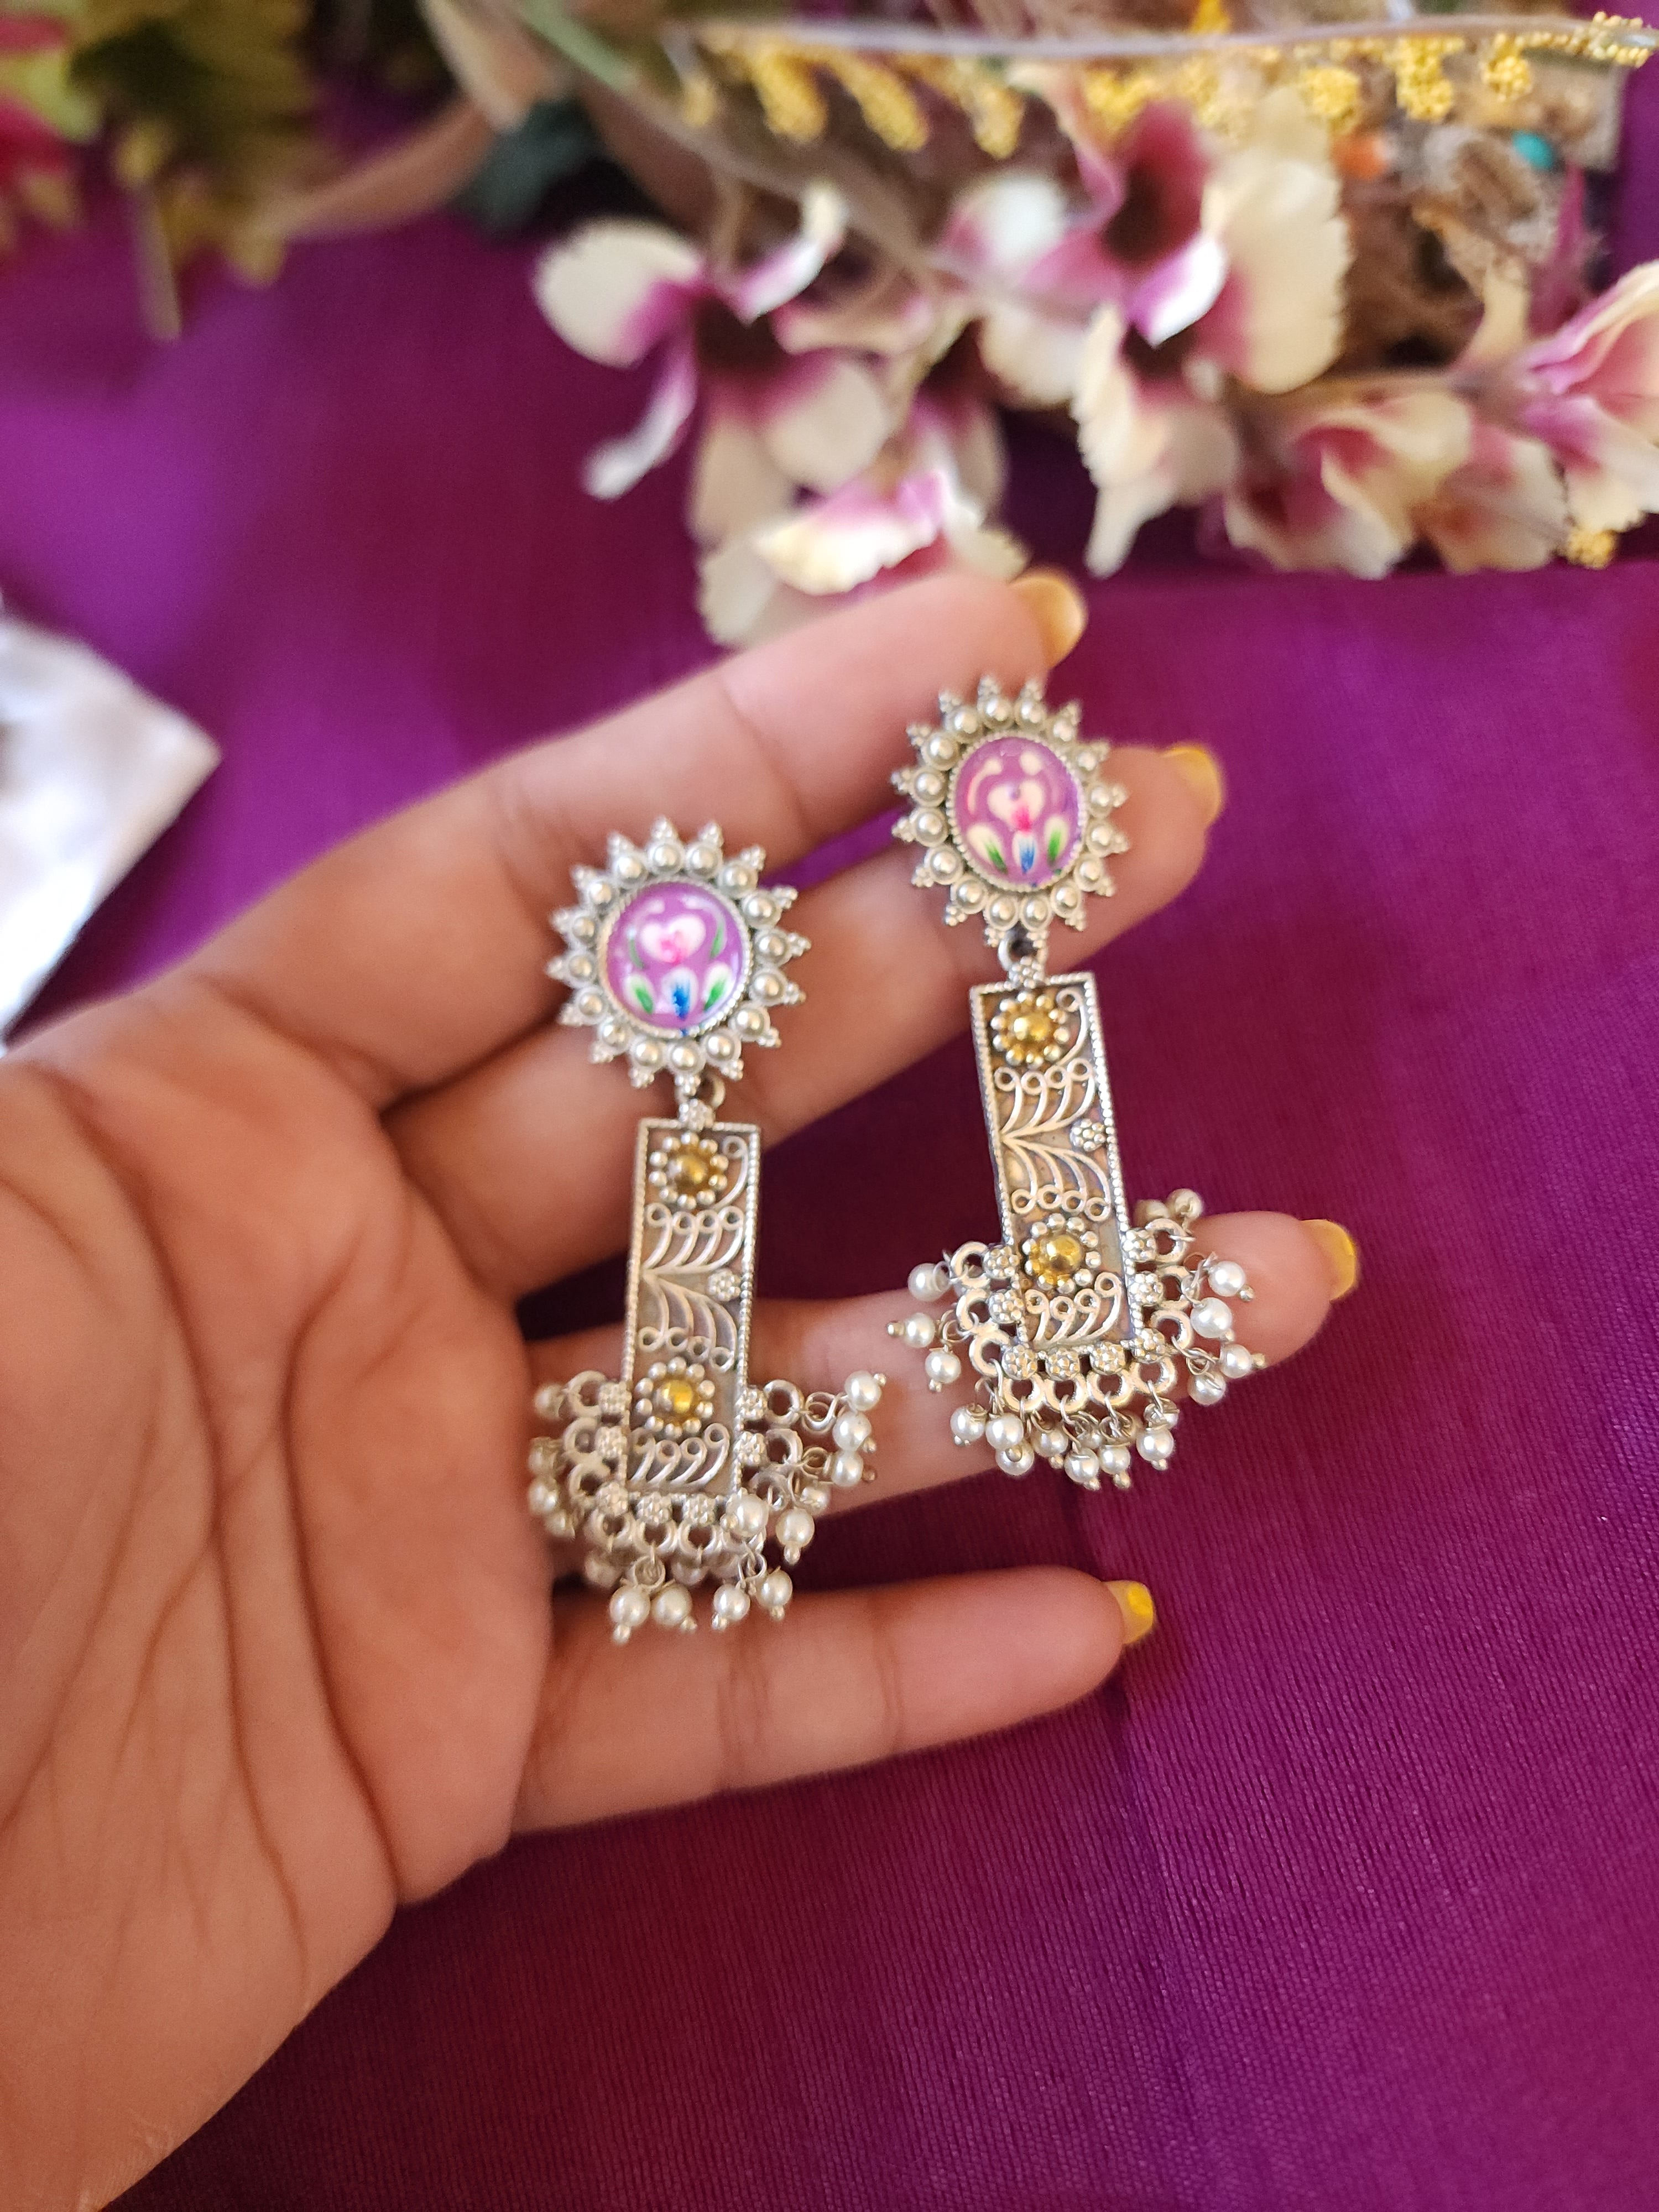 Anthara handpainted silveralike earrings